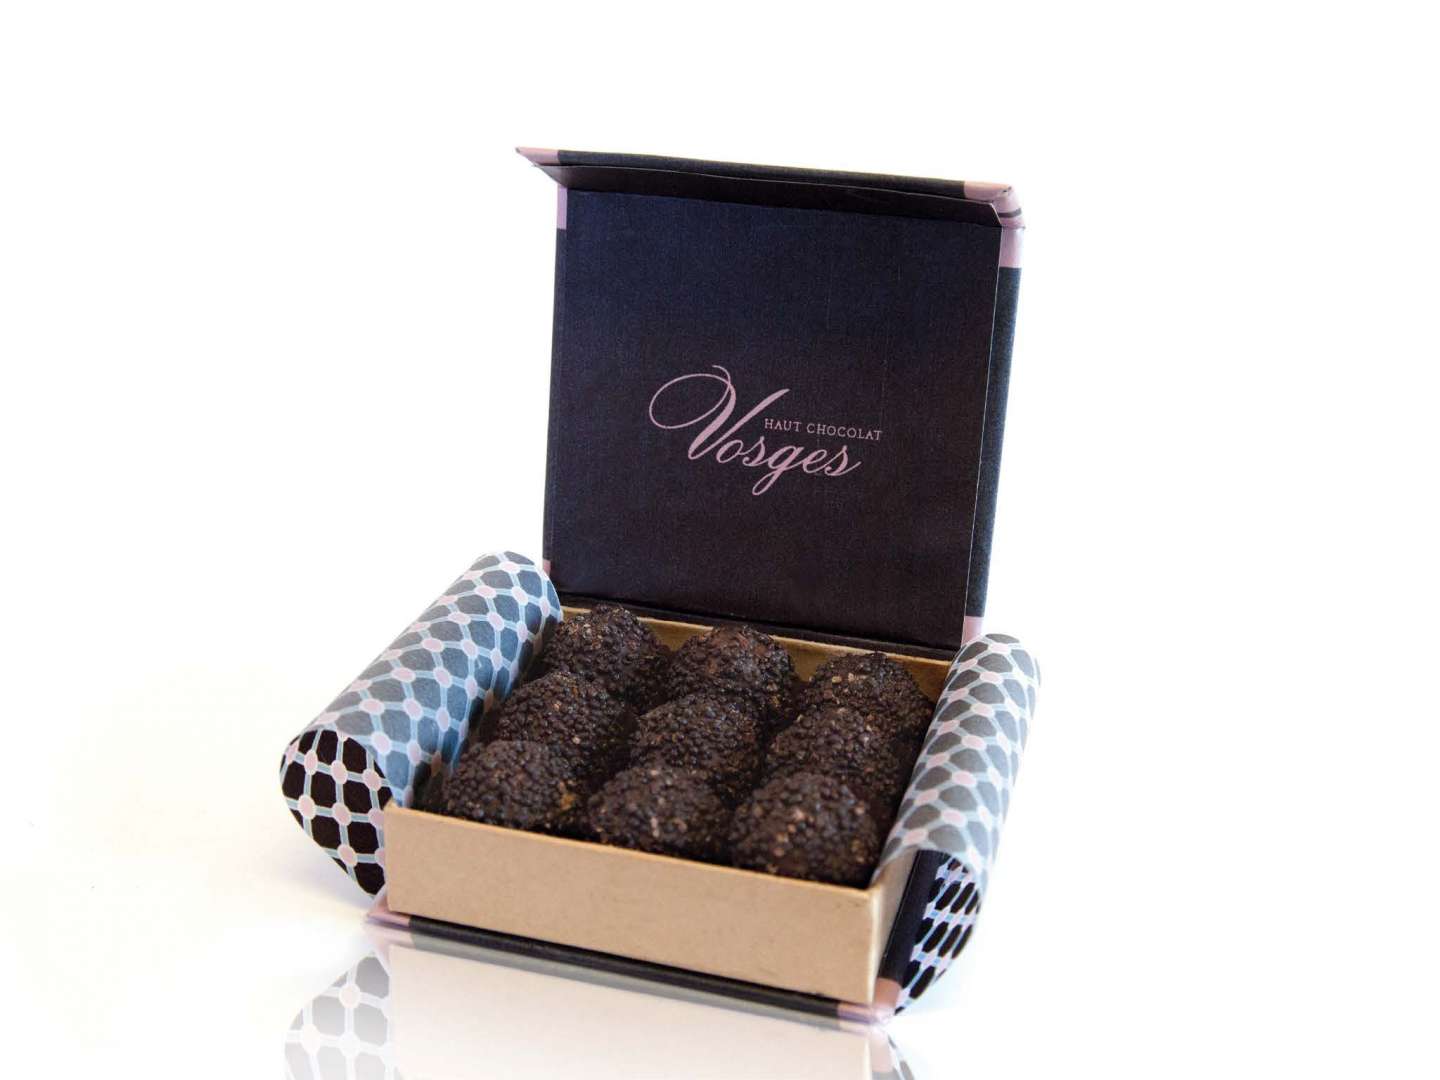 Vosges Haute Chocolate